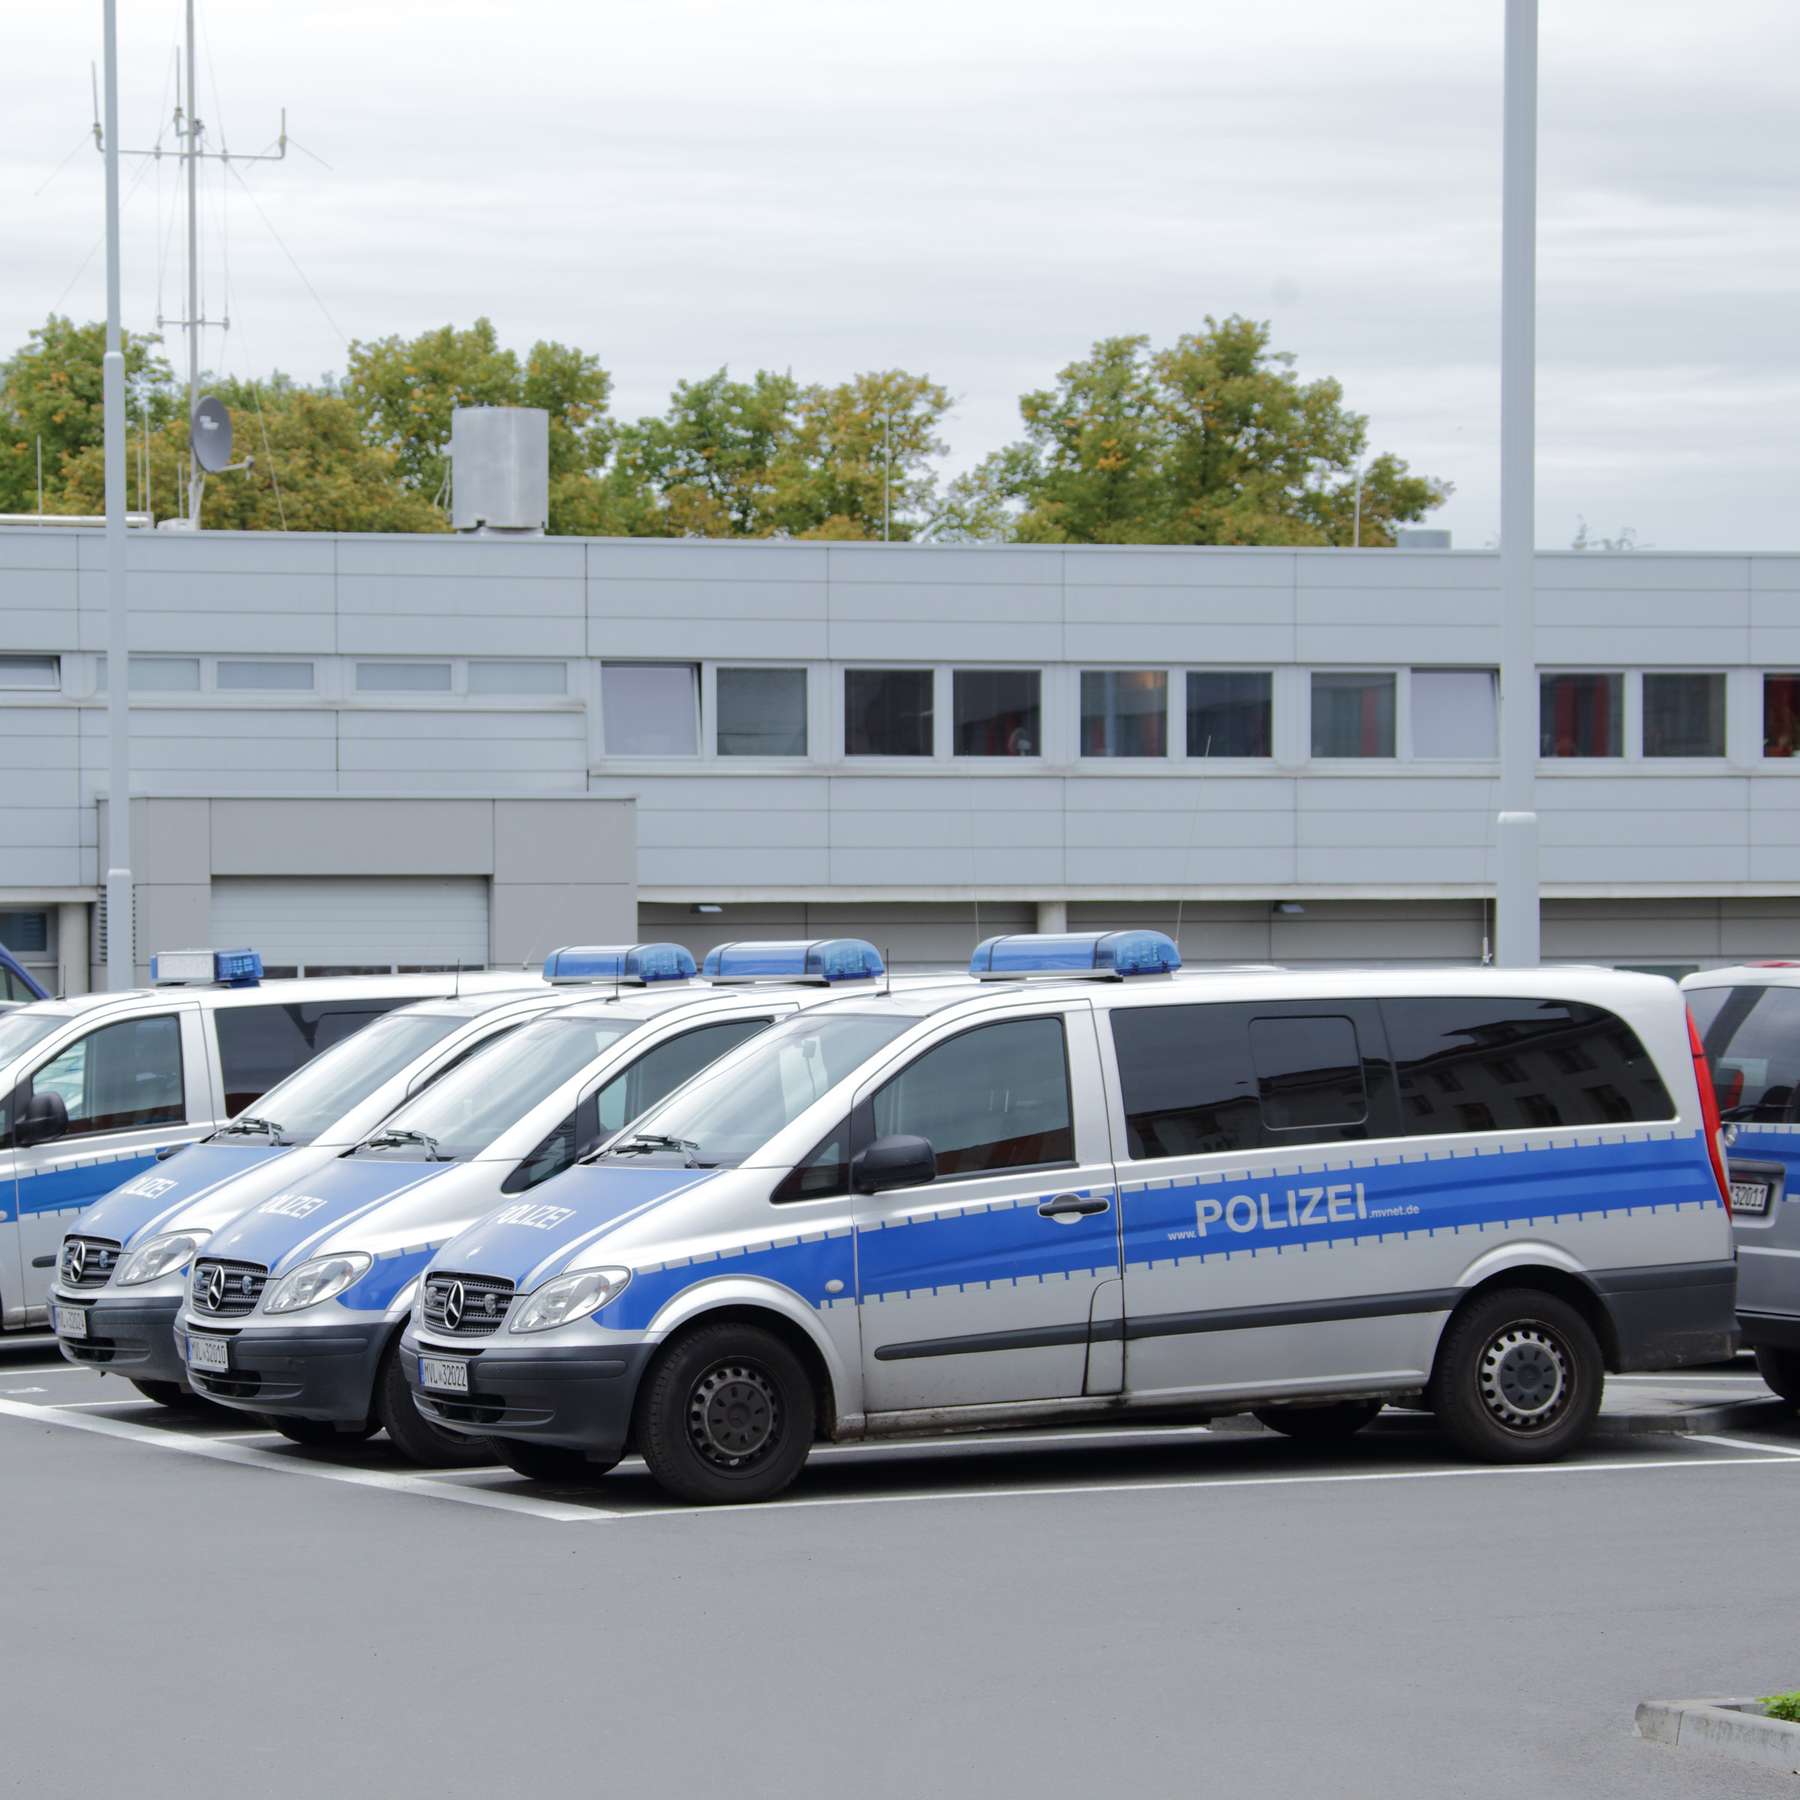 Polizei Fahrzeuge © 2015 Christian Hoffmann (BBL MV)